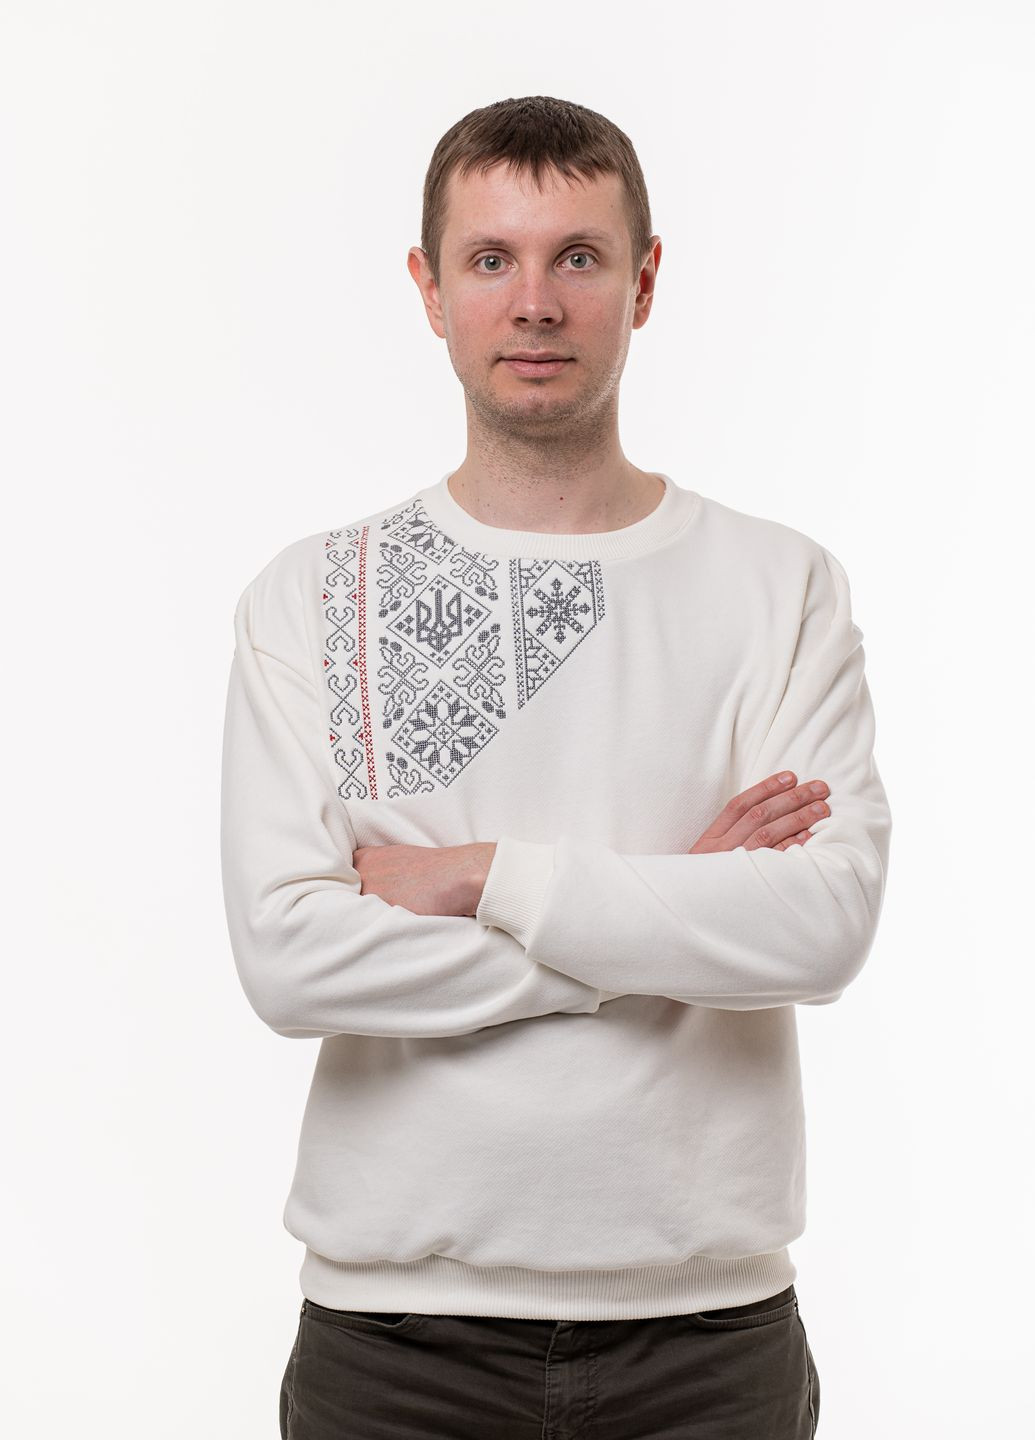 Мужской свитшот-вышиванка с вышивкой "Победа" VINCA - крой орнамент молочный повседневный хлопок, трикотаж - (266340851)